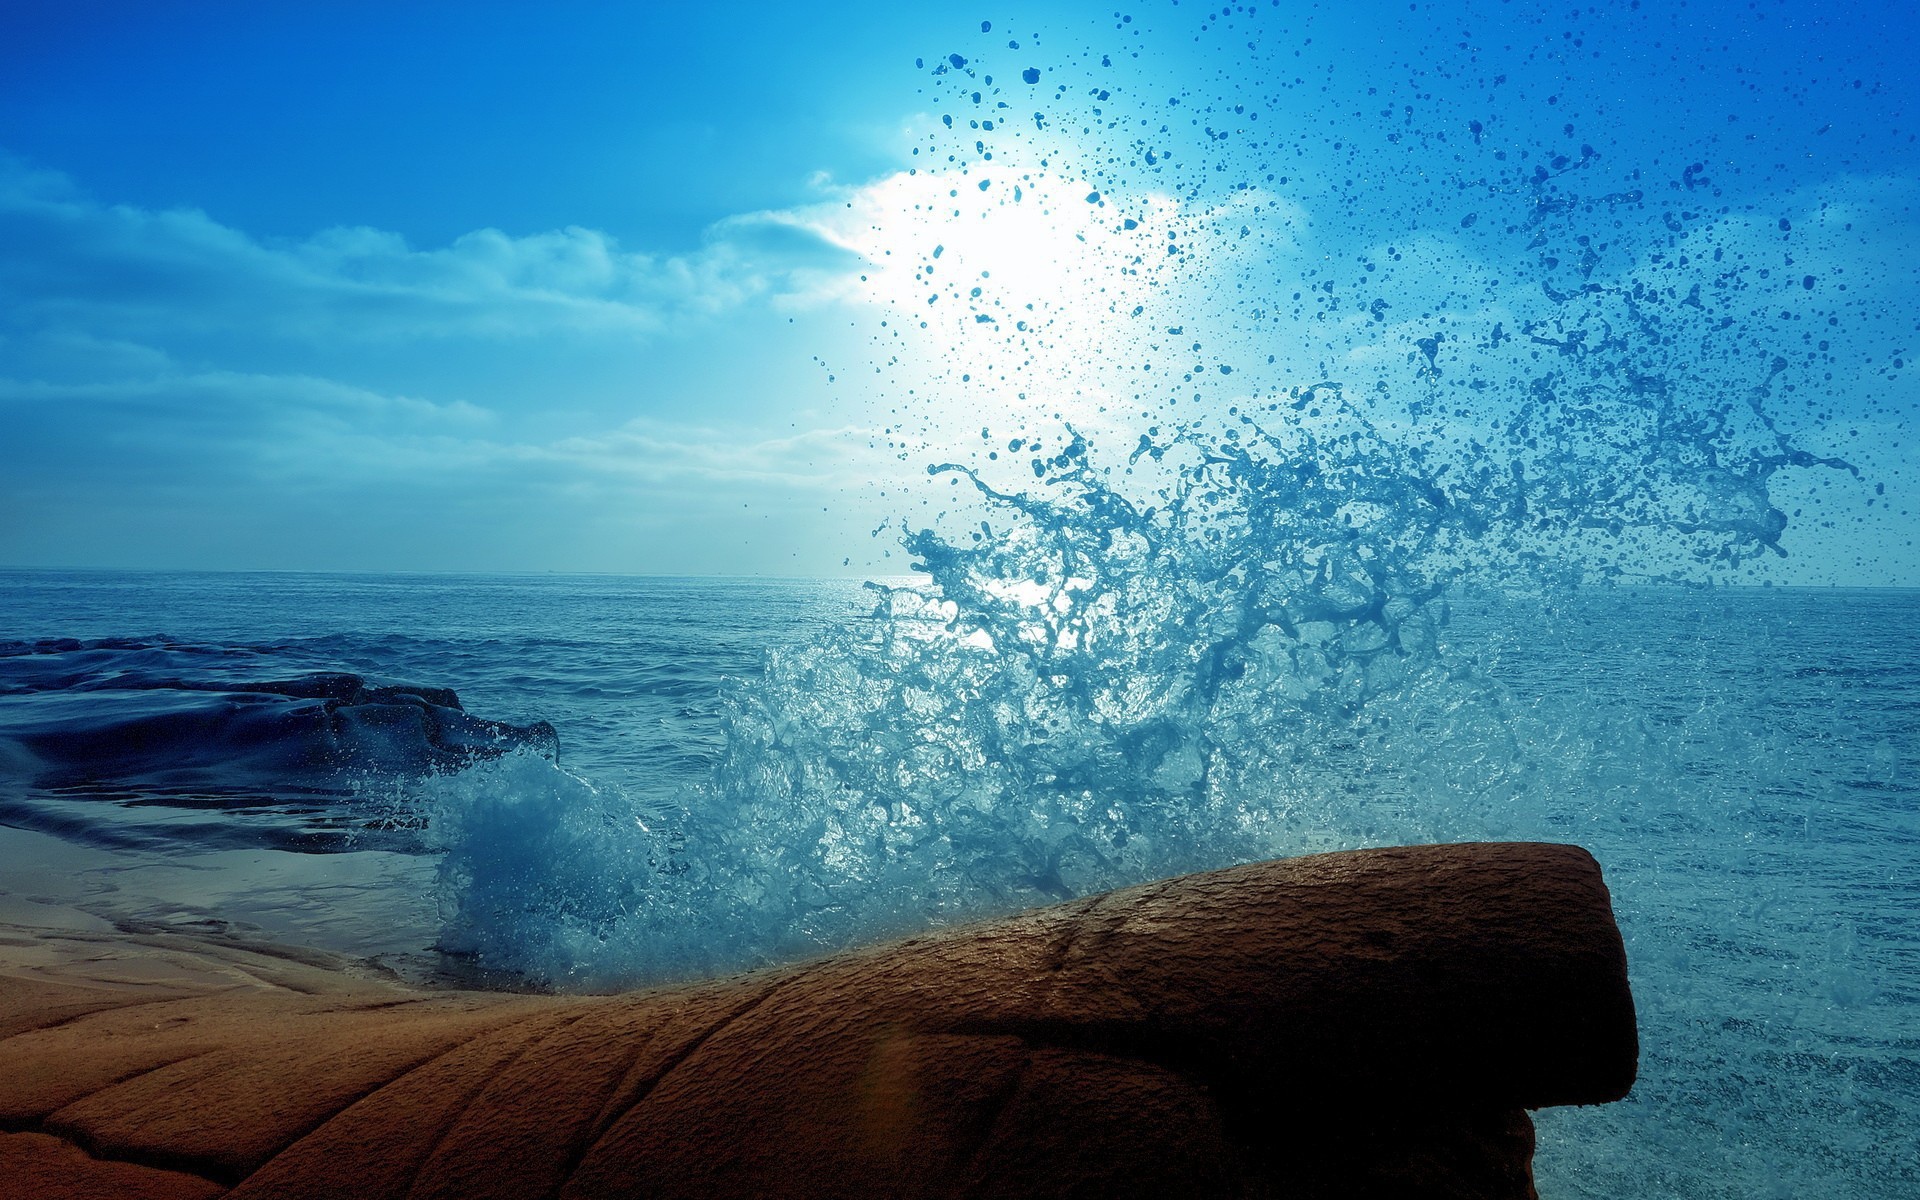 Голубая волна разбилась о камень на берегу